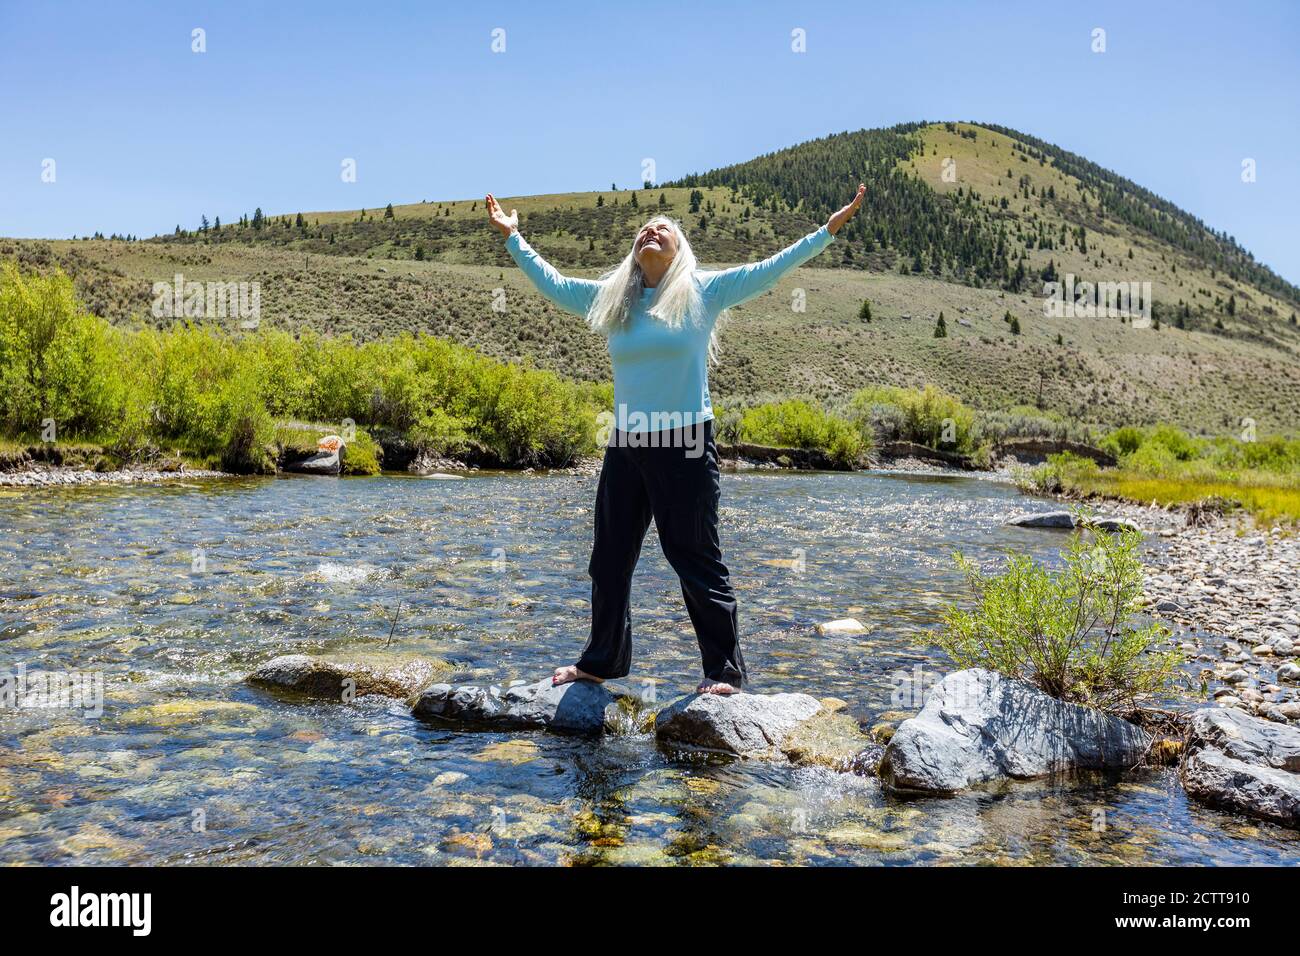 USA, Idaho, Sun Valley, Frau mit aufgehobenen Armen, die auf Felsen im Fluss stehen Stockfoto